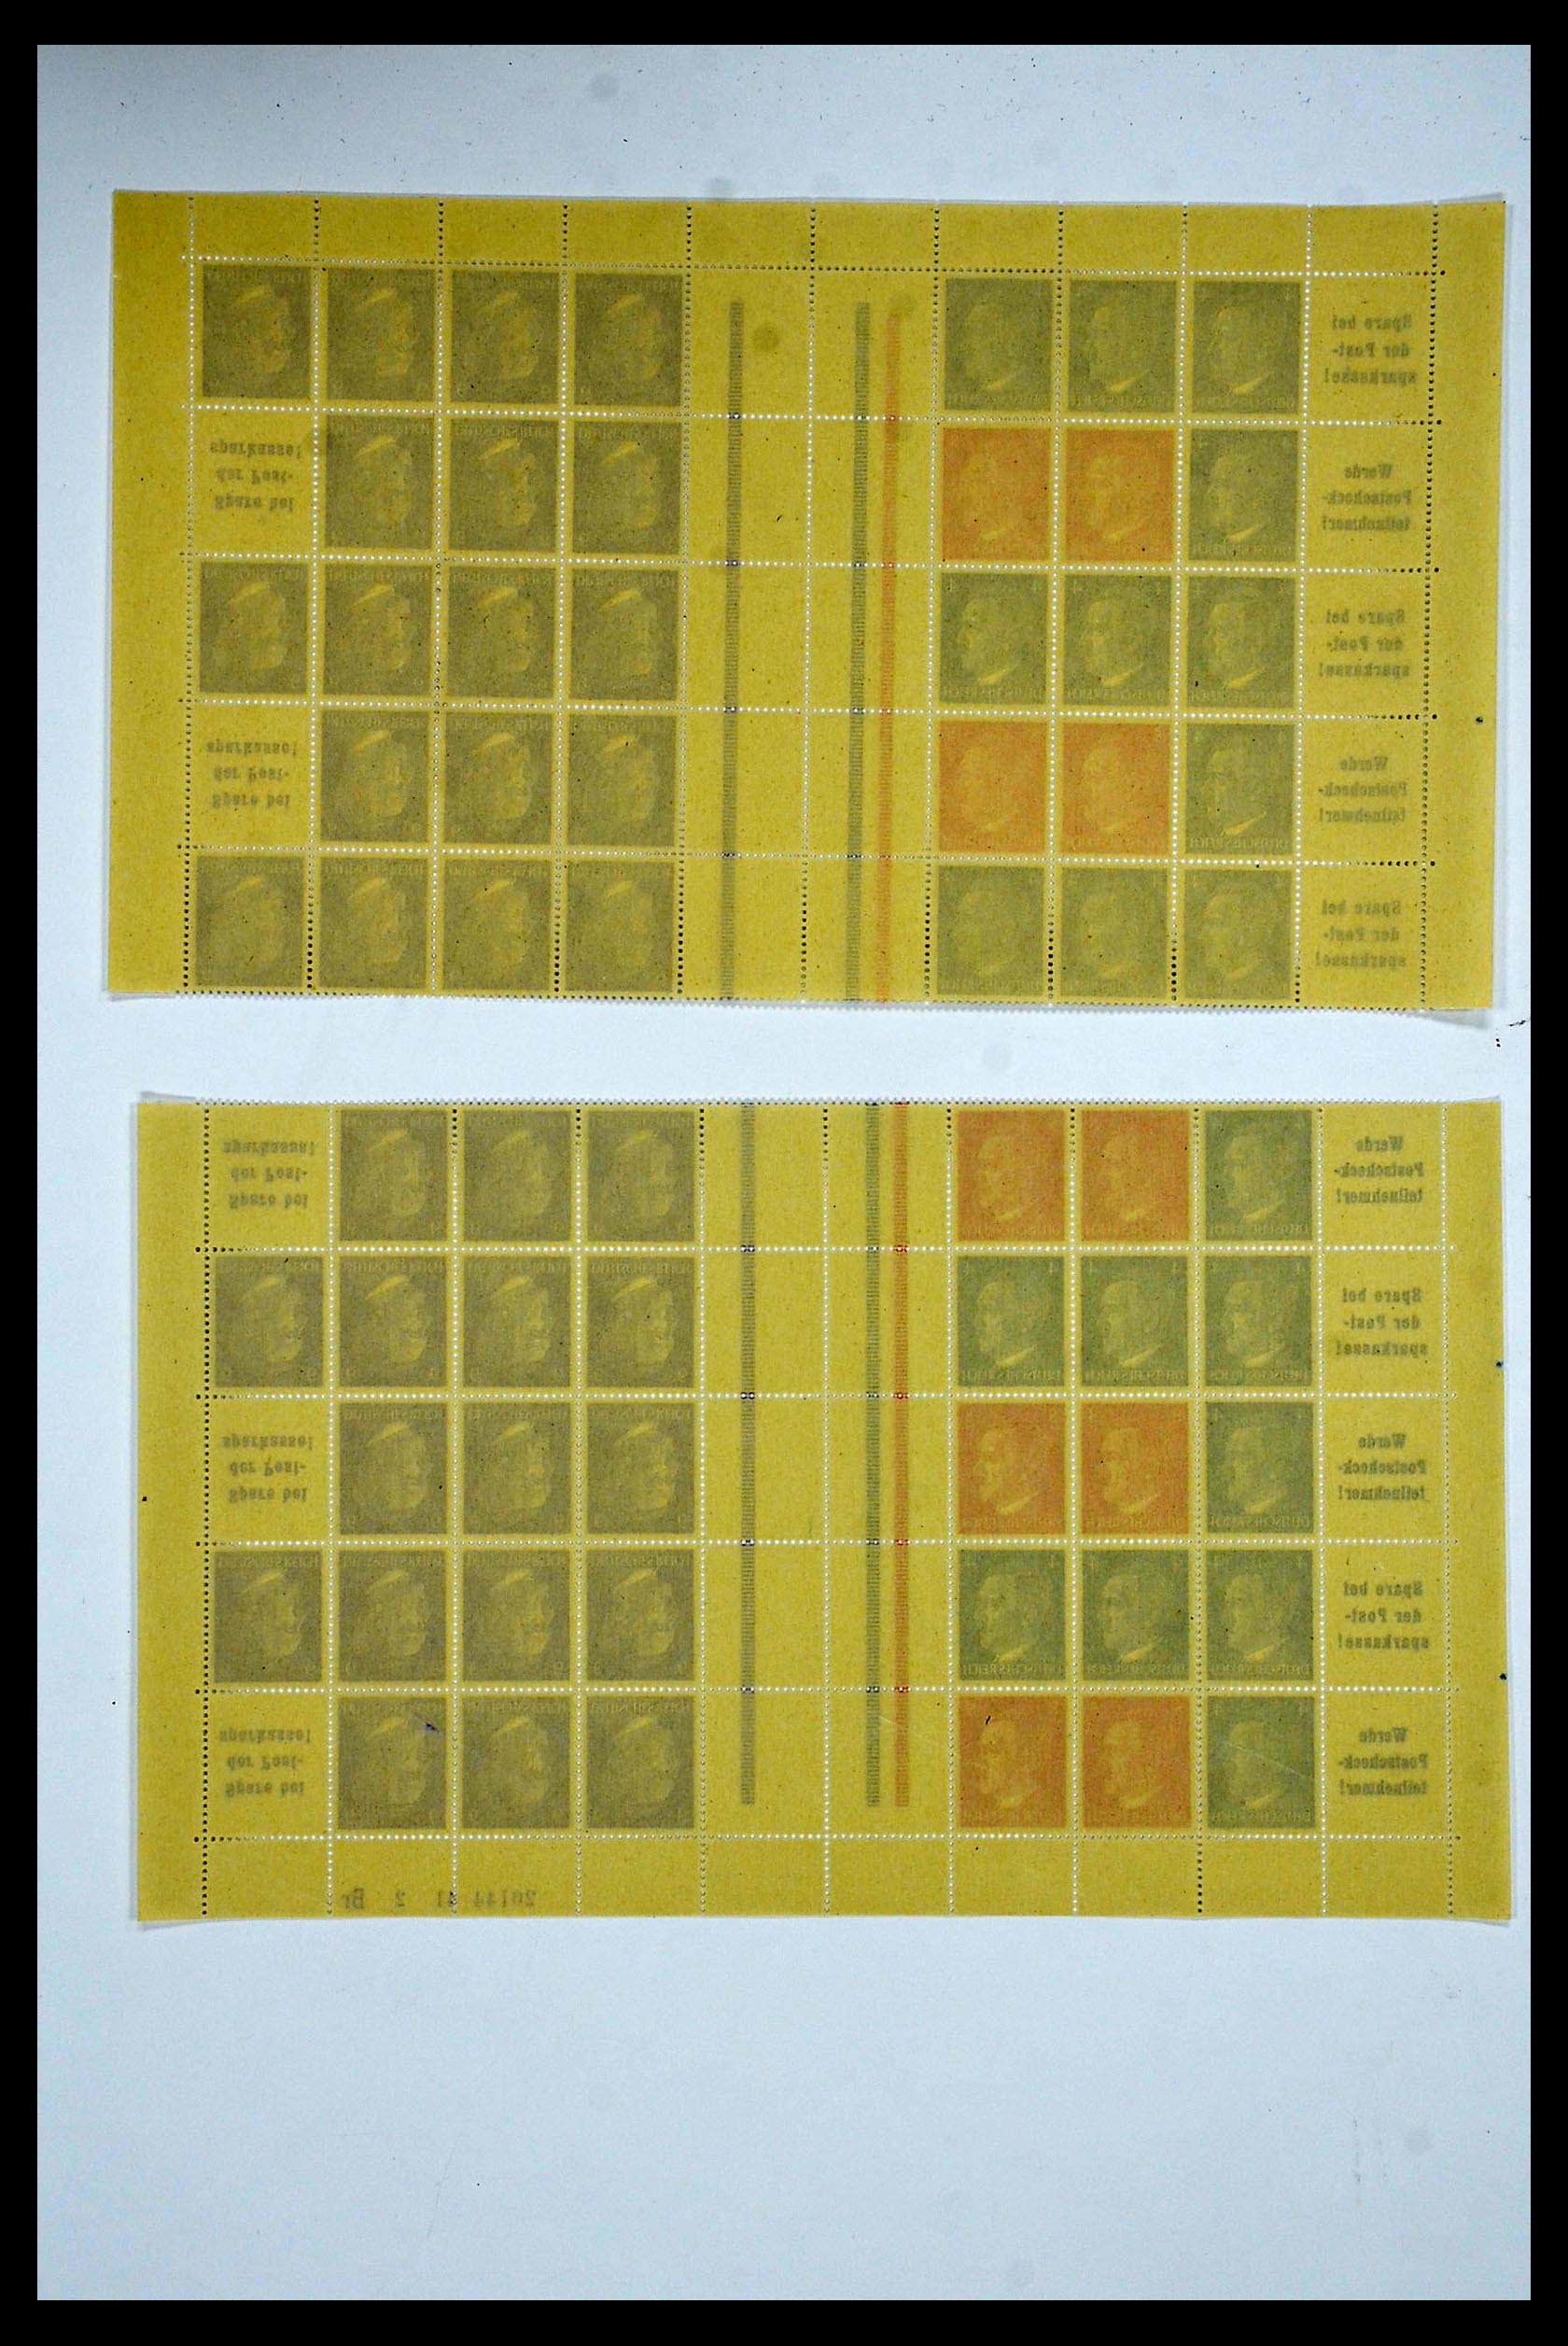 34164 074 - Stamp collection 34164 German Reich Markenheftchenbogen 1933-1942.